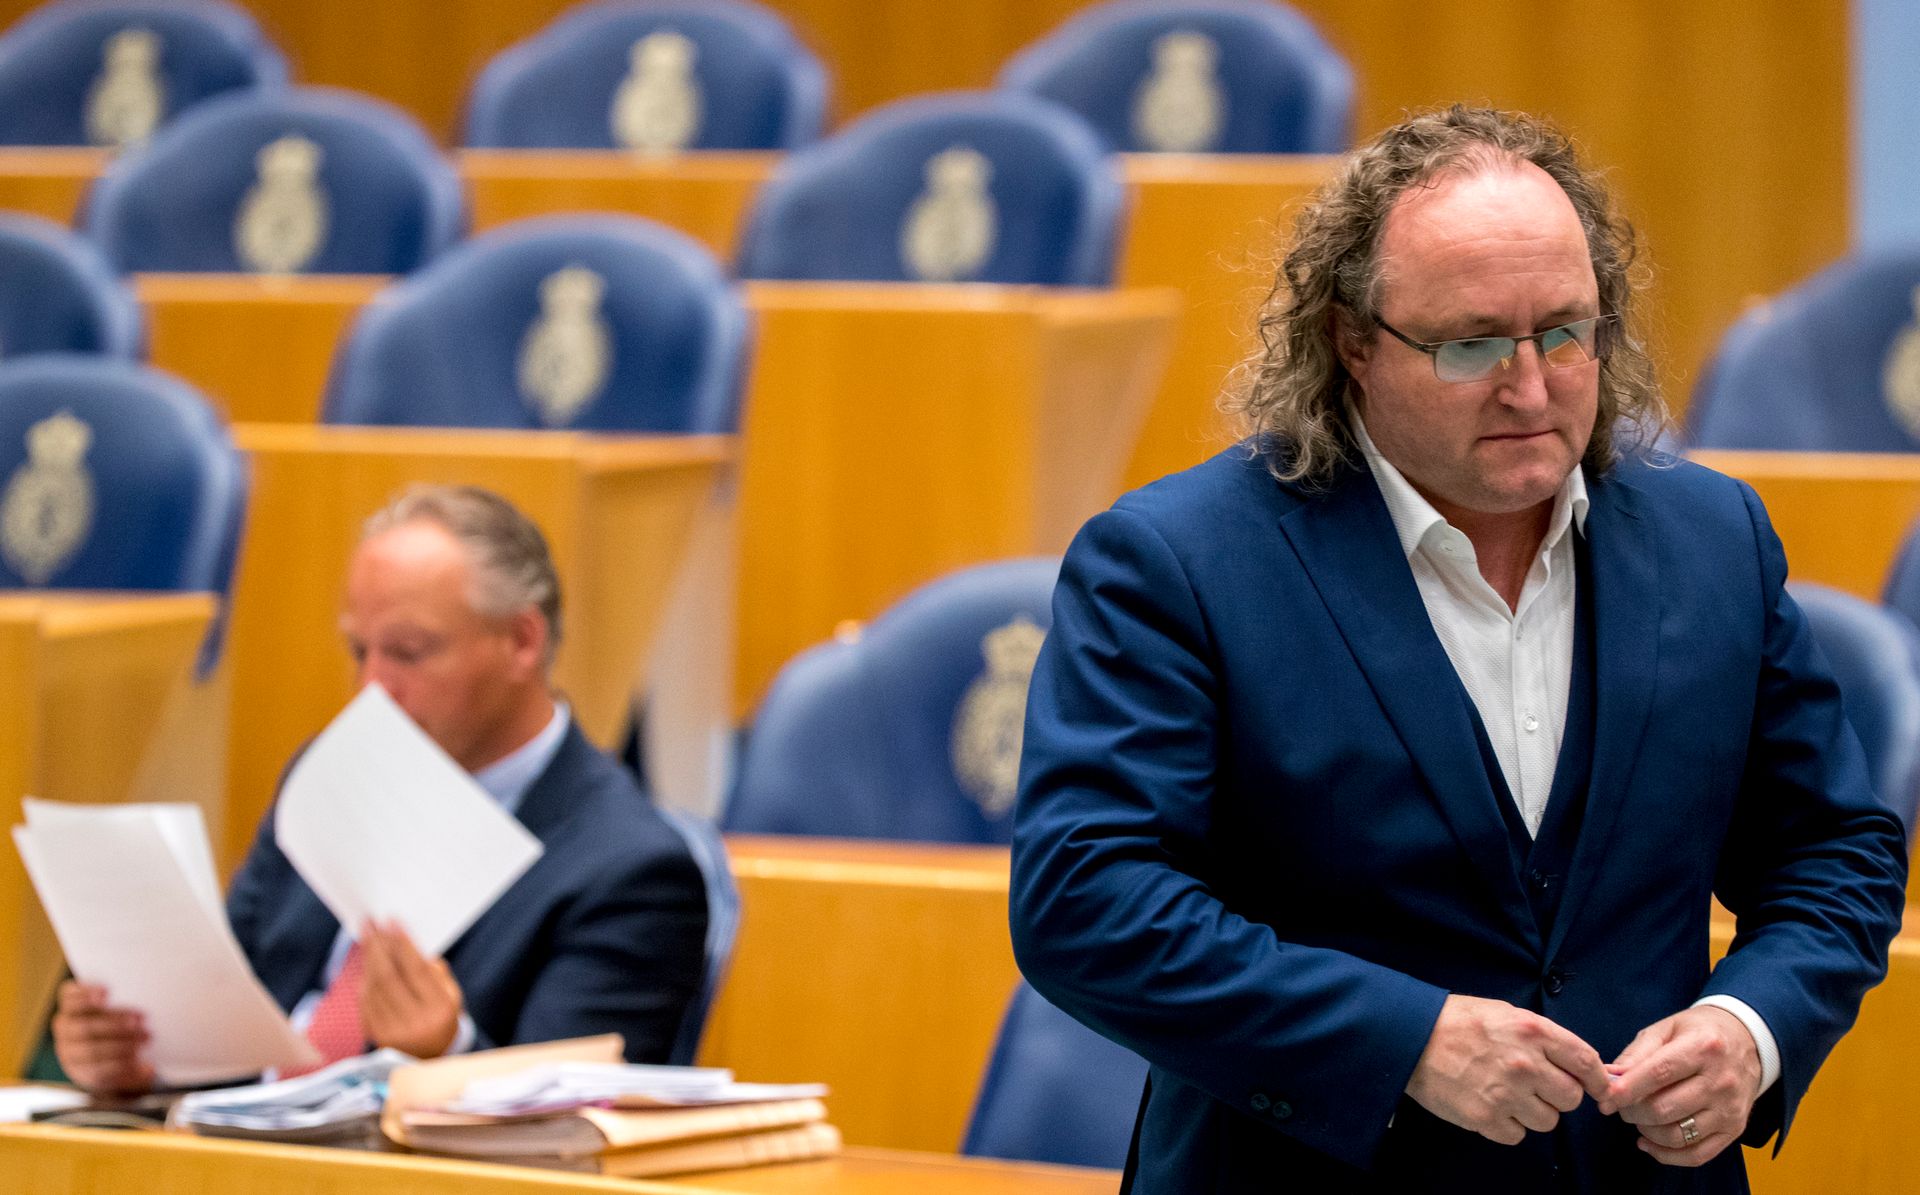 PVV-Kamerlid Graus dwong eigen vrouw tot seks met anderen - Joop